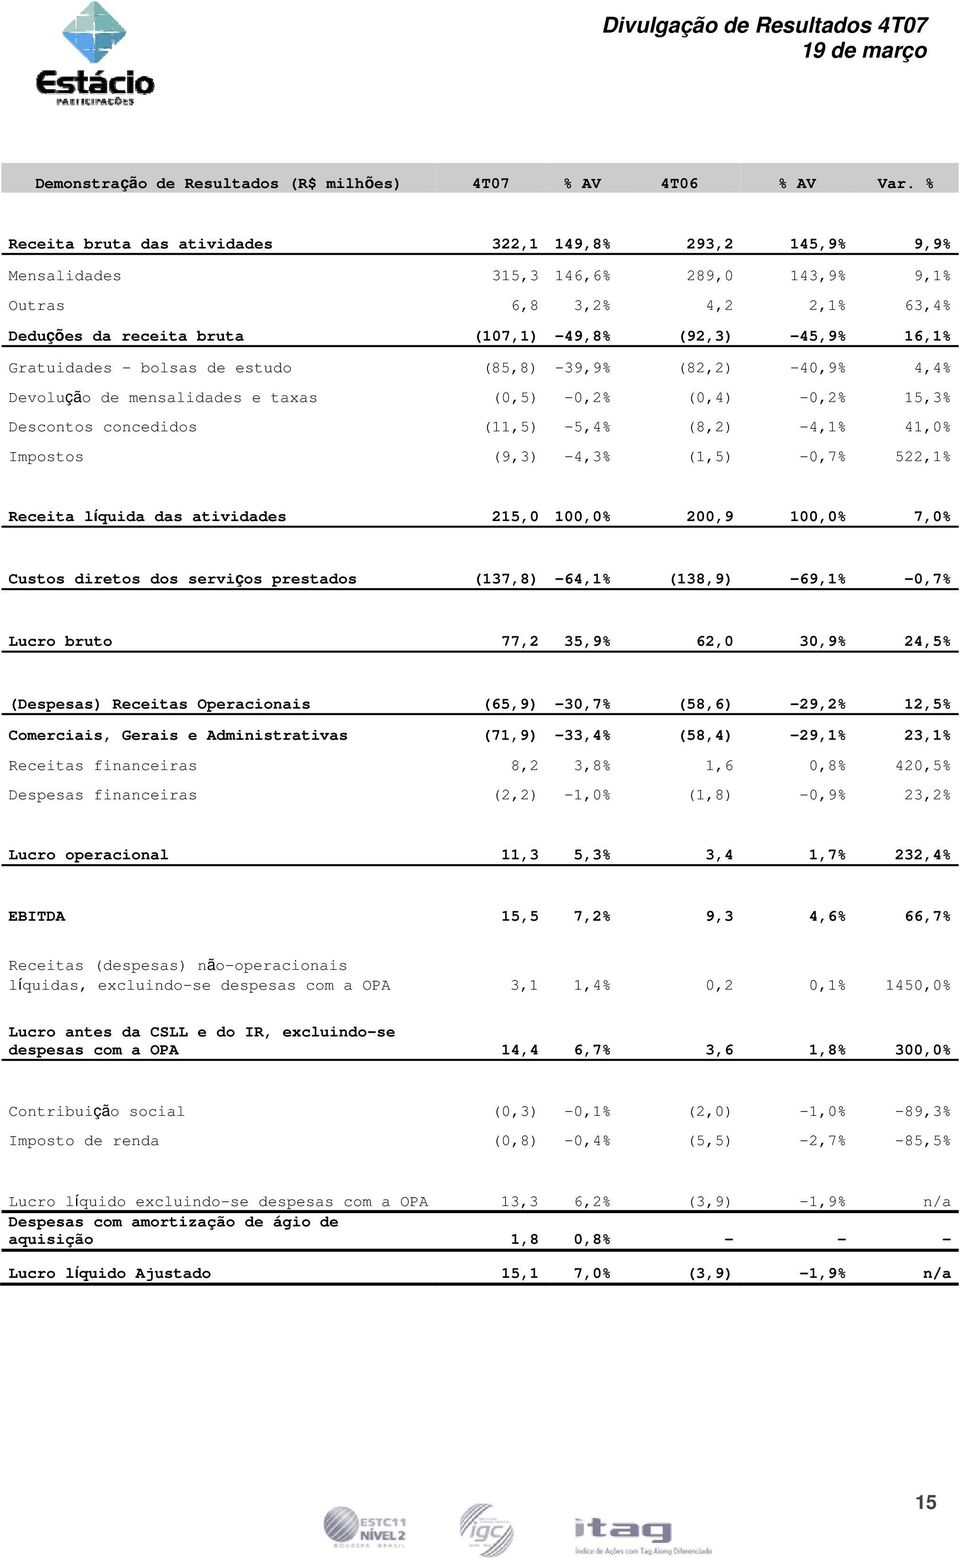 Gratuidades - bolsas de estudo (85,8) -39,9% (82,2) -40,9% 4,4% Devolução de mensalidades e taxas (0,5) -0,2% (0,4) -0,2% 15,3% Descontos concedidos (11,5) -5,4% (8,2) -4,1% 41,0% Impostos (9,3)